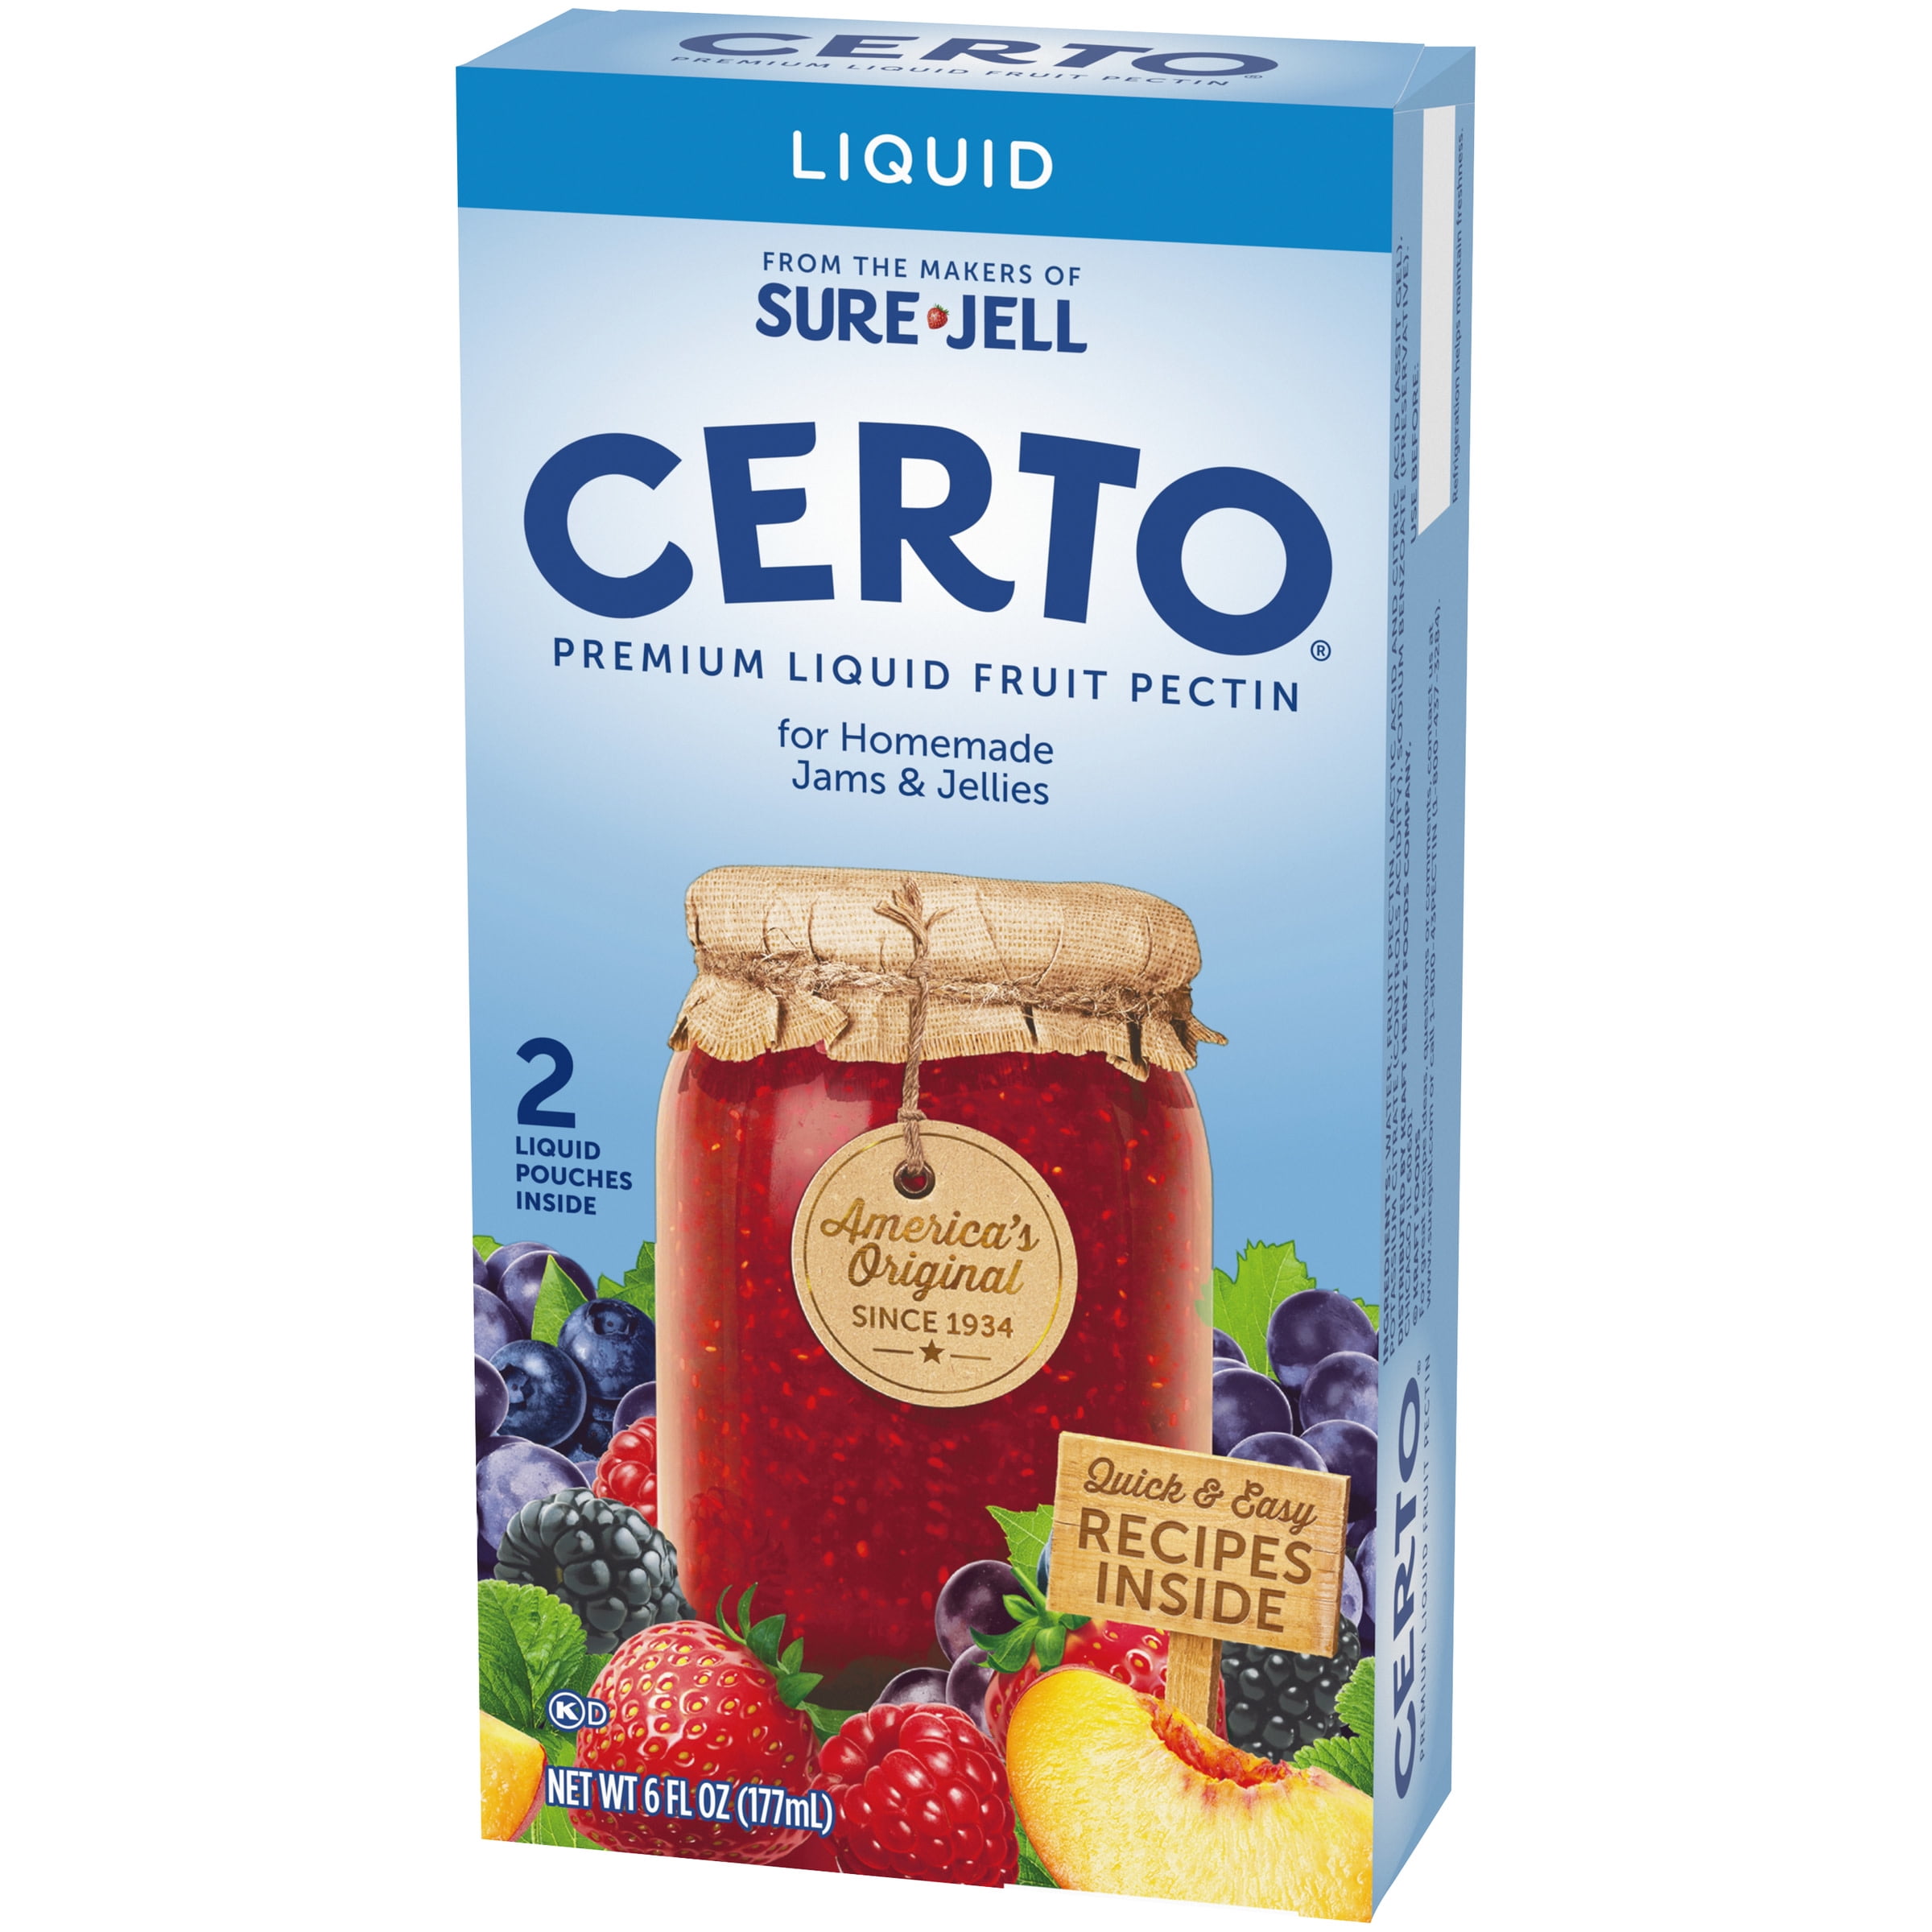 Certo Premium Liquid Fruit Pectin 2 Ct Packs Walmart Com Walmart Com